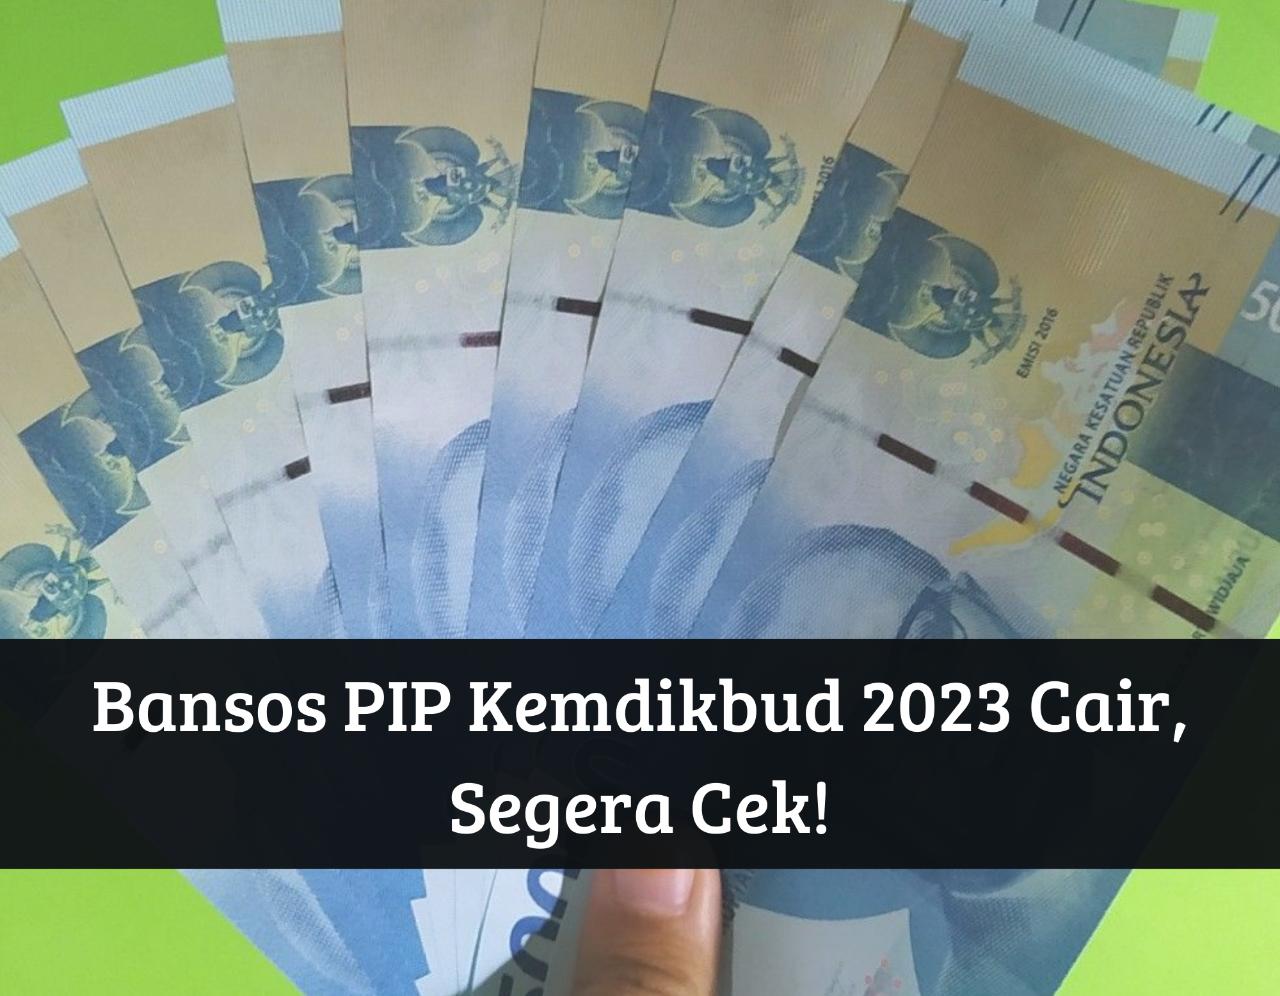 Bansos PIP Kemdikbud 2023 Masih Cair! Klik Link pip.kemdikbud.go.id, Ambil Uang Gratis Rp1 Juta Pakai KIP